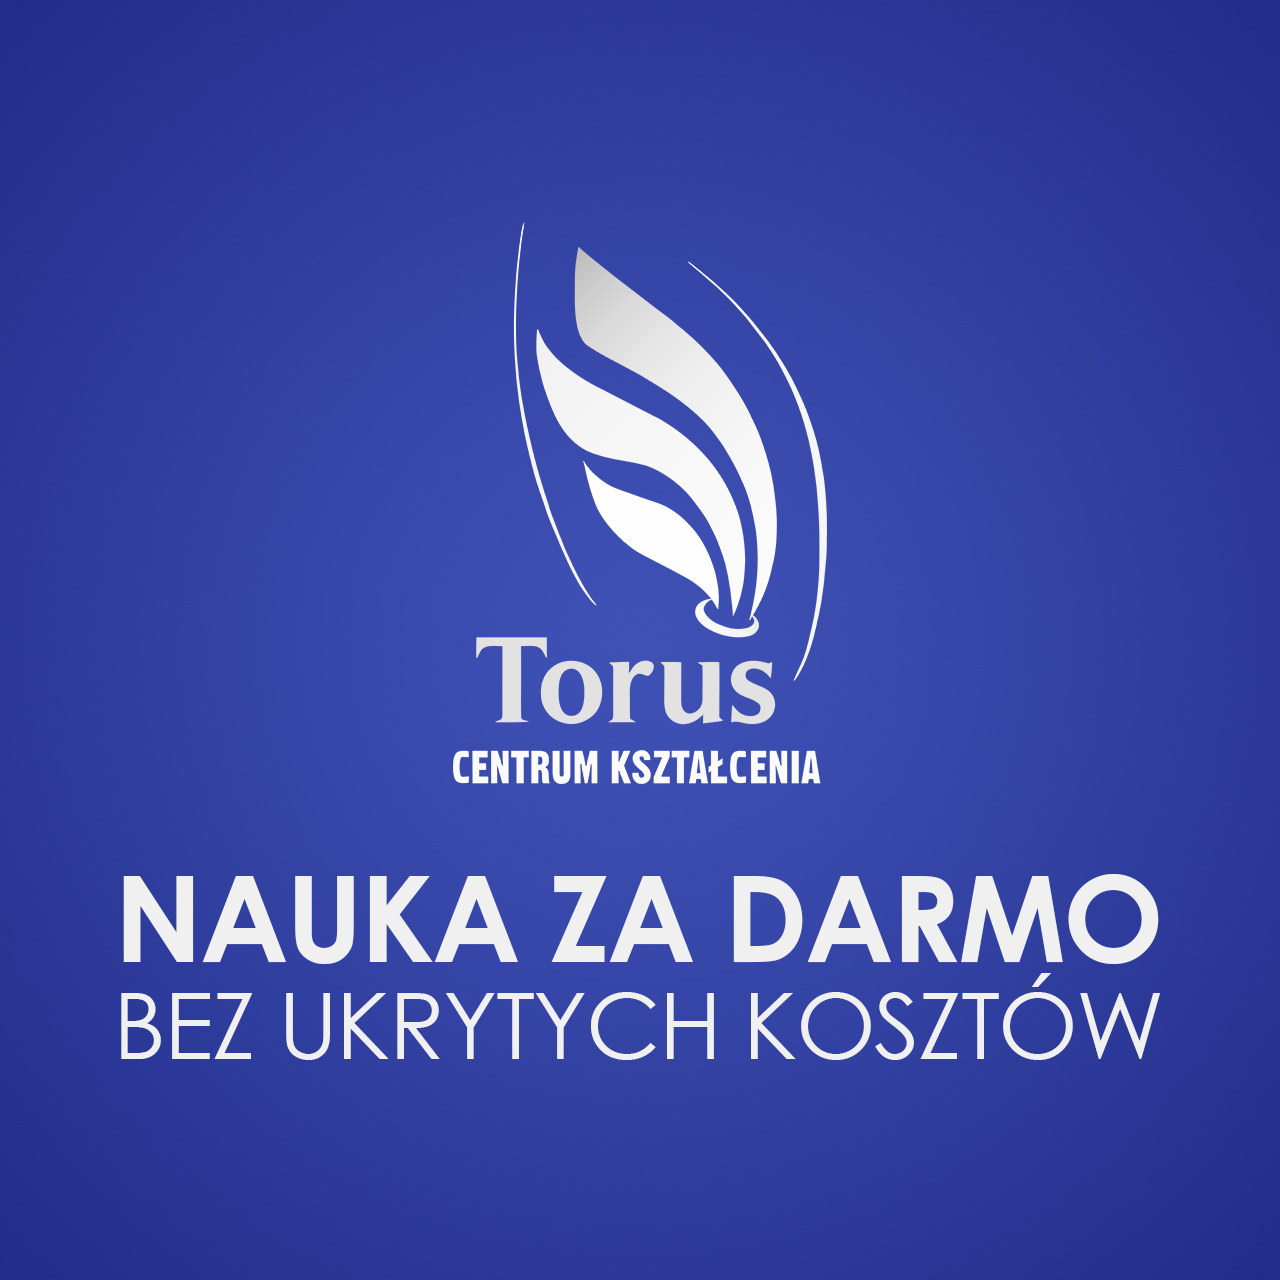 Logo Torus nauka za darmo